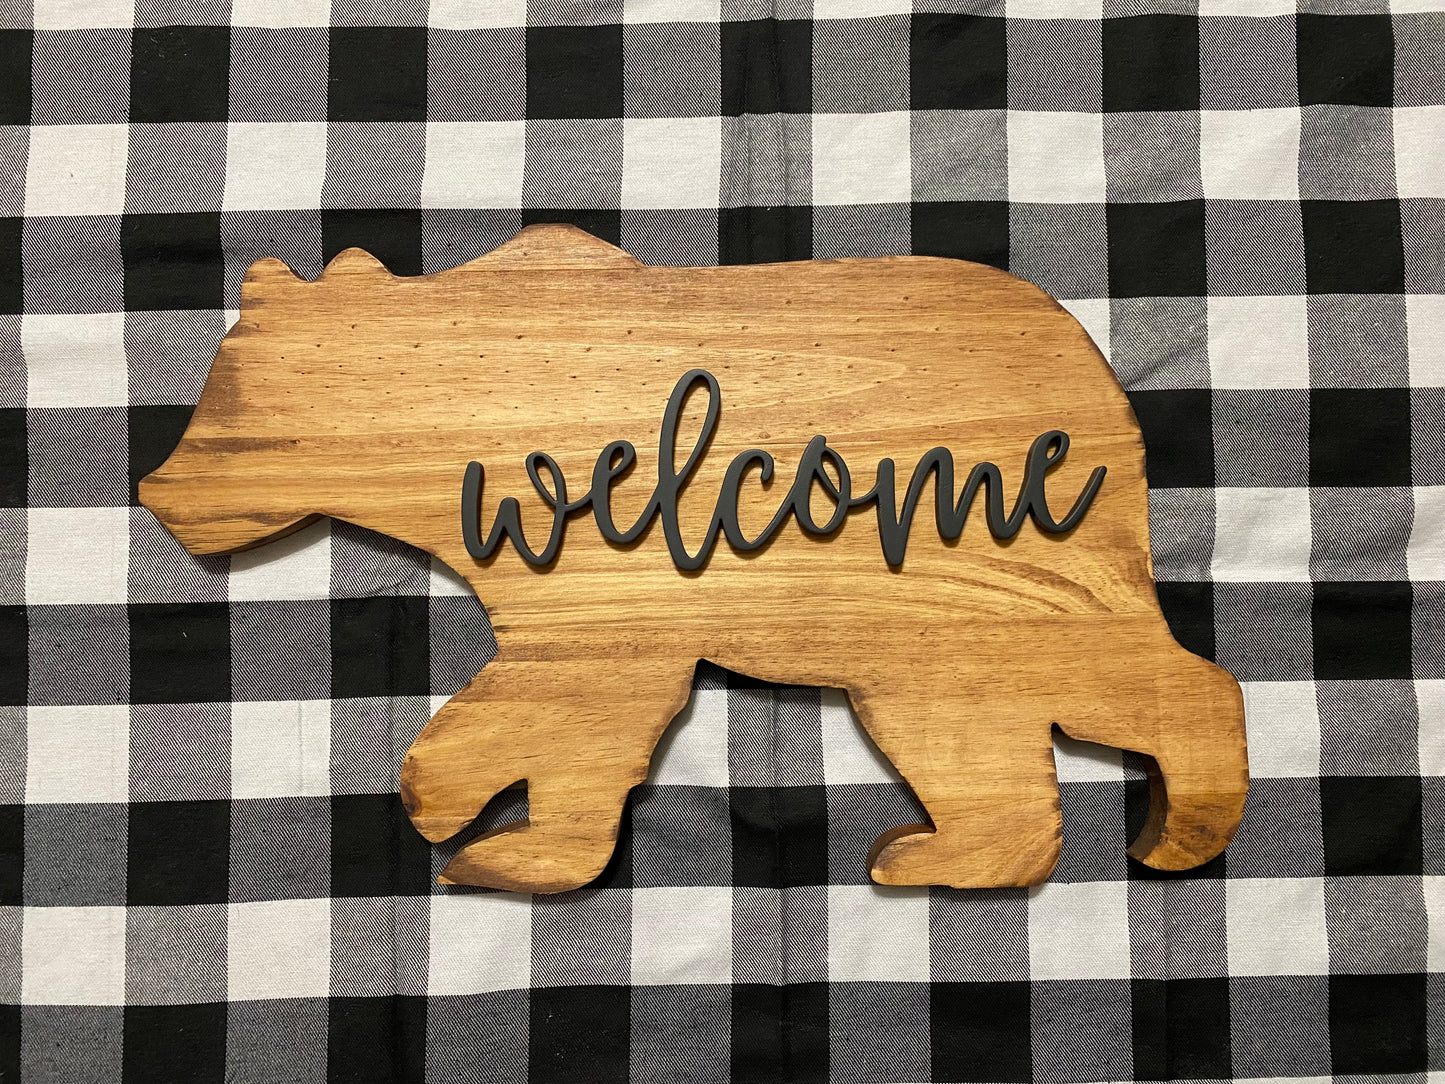 Welcome bear